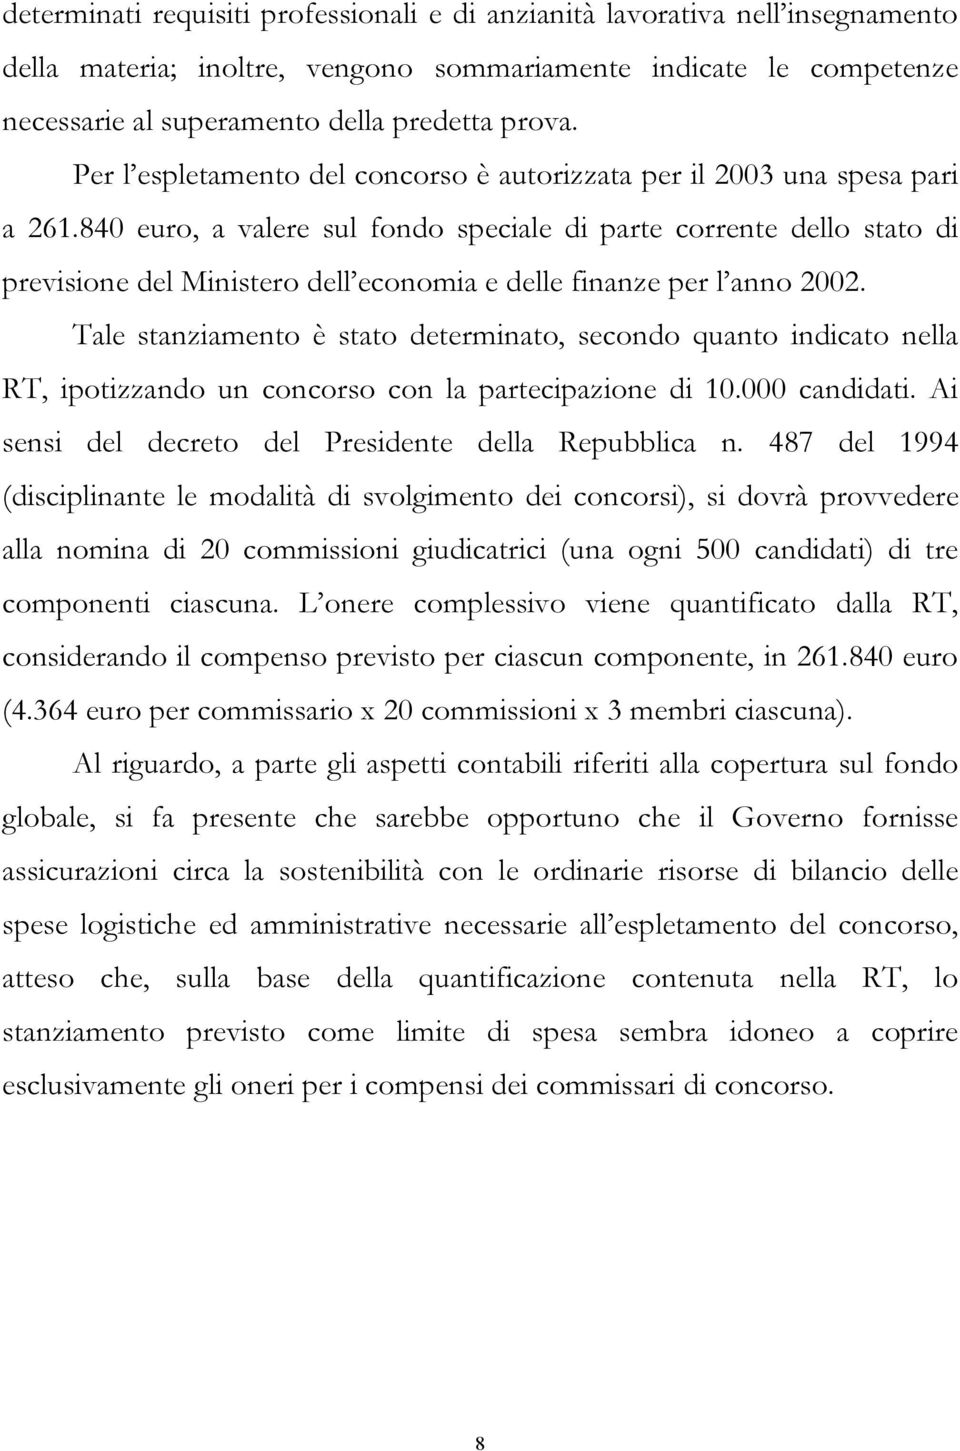 840 euro, a valere sul fondo speciale di parte corrente dello stato di previsione del Ministero dell economia e delle finanze per l anno 2002.